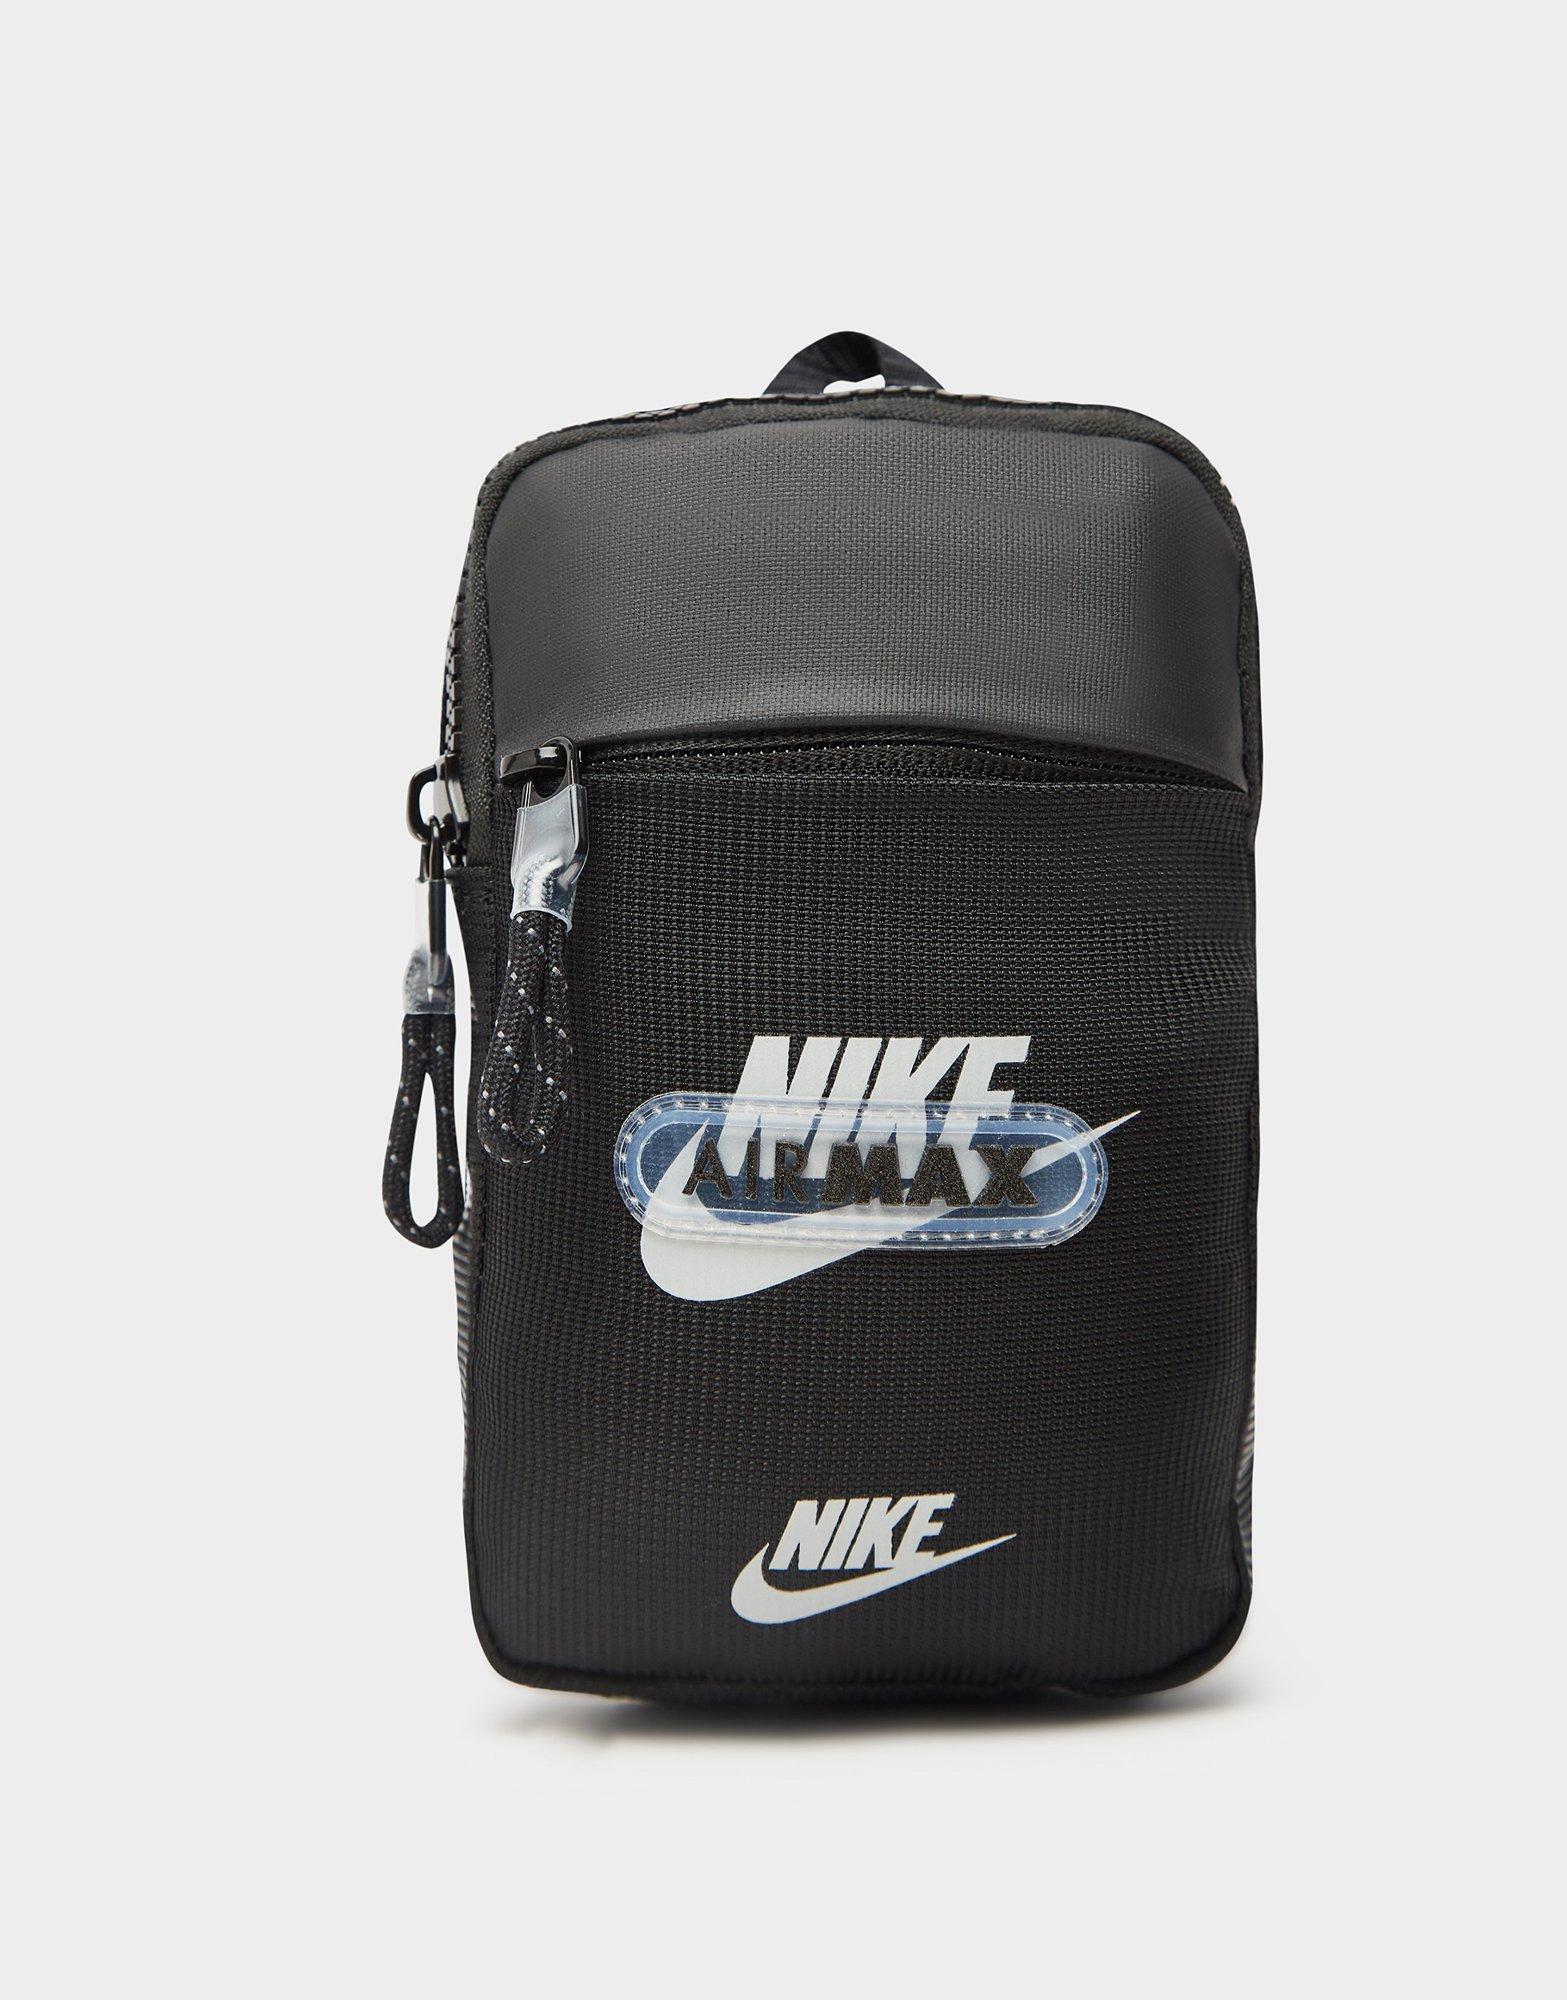 Buy Black Nike Air Max Cross Body Bag